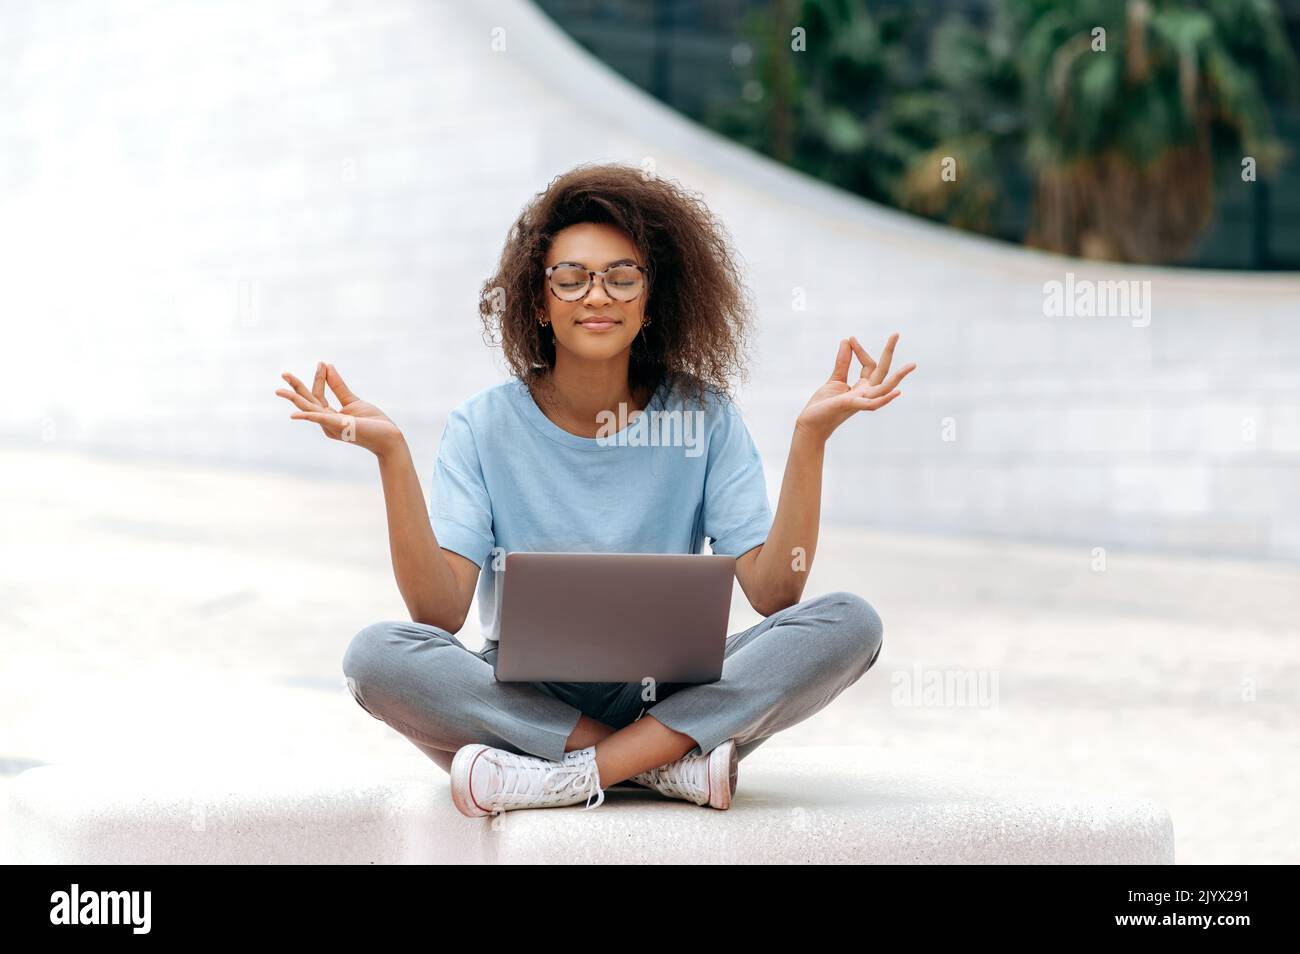 Friedliche Ruhe entspannte afroamerikanische junge Frau mit Brille, Büroangestellte, sitzt in einer Lotusposition im Freien in der Nähe des Geschäftszentrums, meditiert, entspannt, schließt ihre Augen.Pause bei der Online-Arbeit Stockfoto